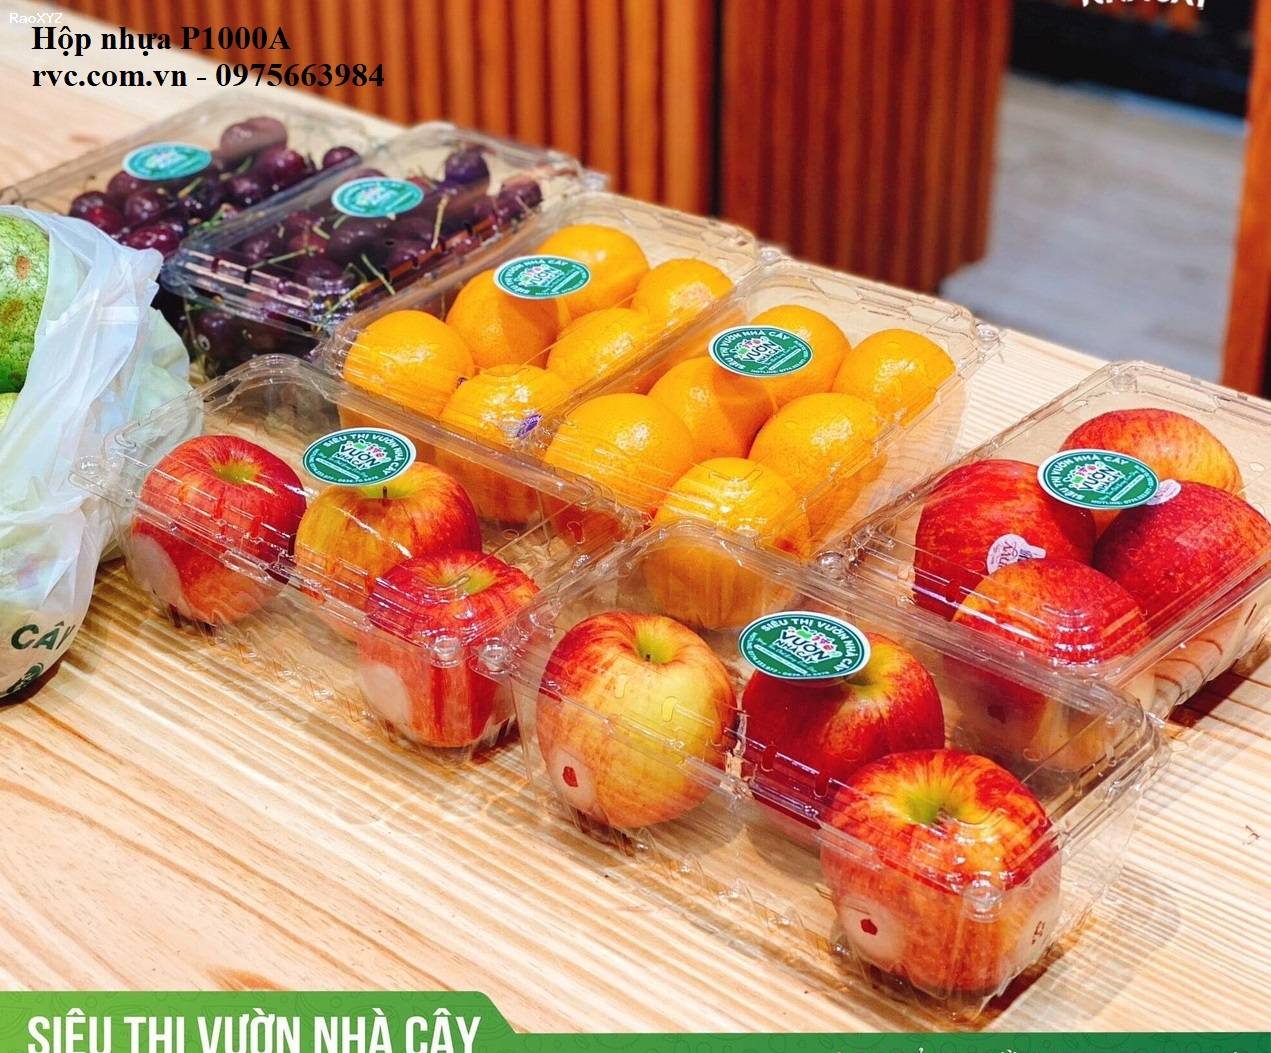 Hộp nhựa đựng trái cây P1000A đảm bảo chất lượng